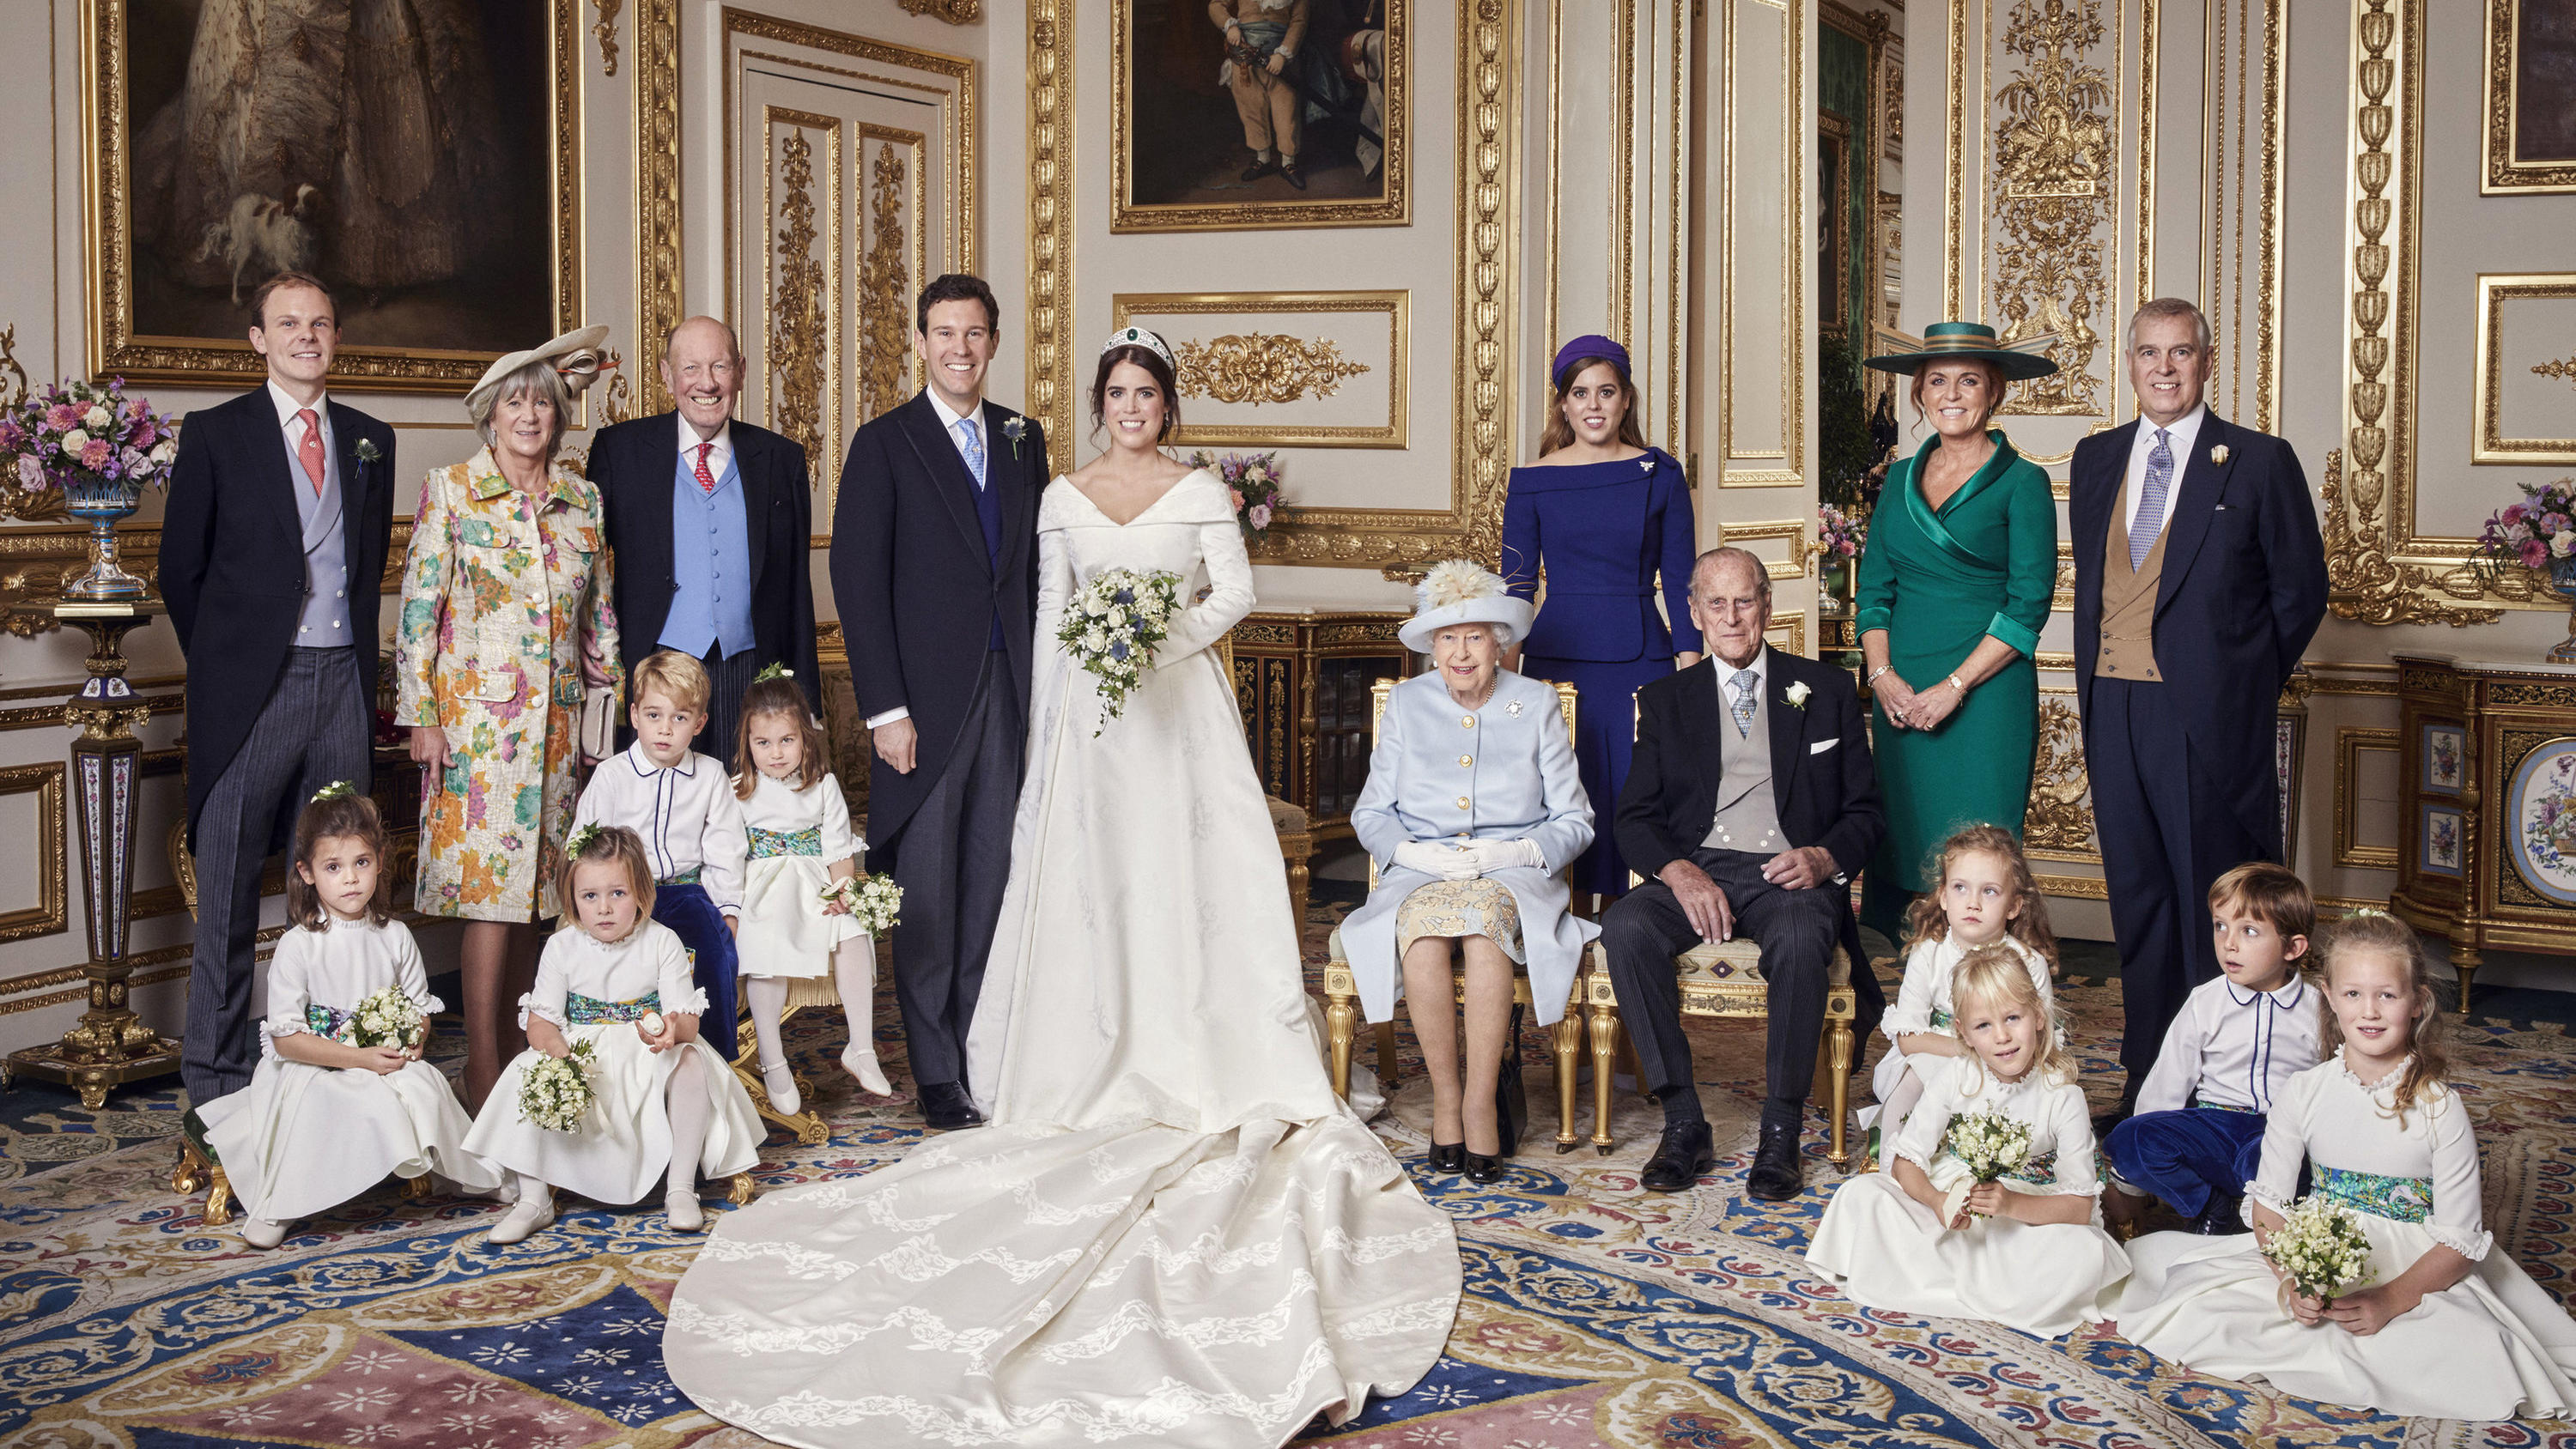 Auf dem offiziellen Hochzeitsfoto von Prinzessin Eugenie und ihrem Mann Jack Brooksbank sieht man Sarah Ferguson und Prinz Andrew harmonisch nebeneinander stehen.